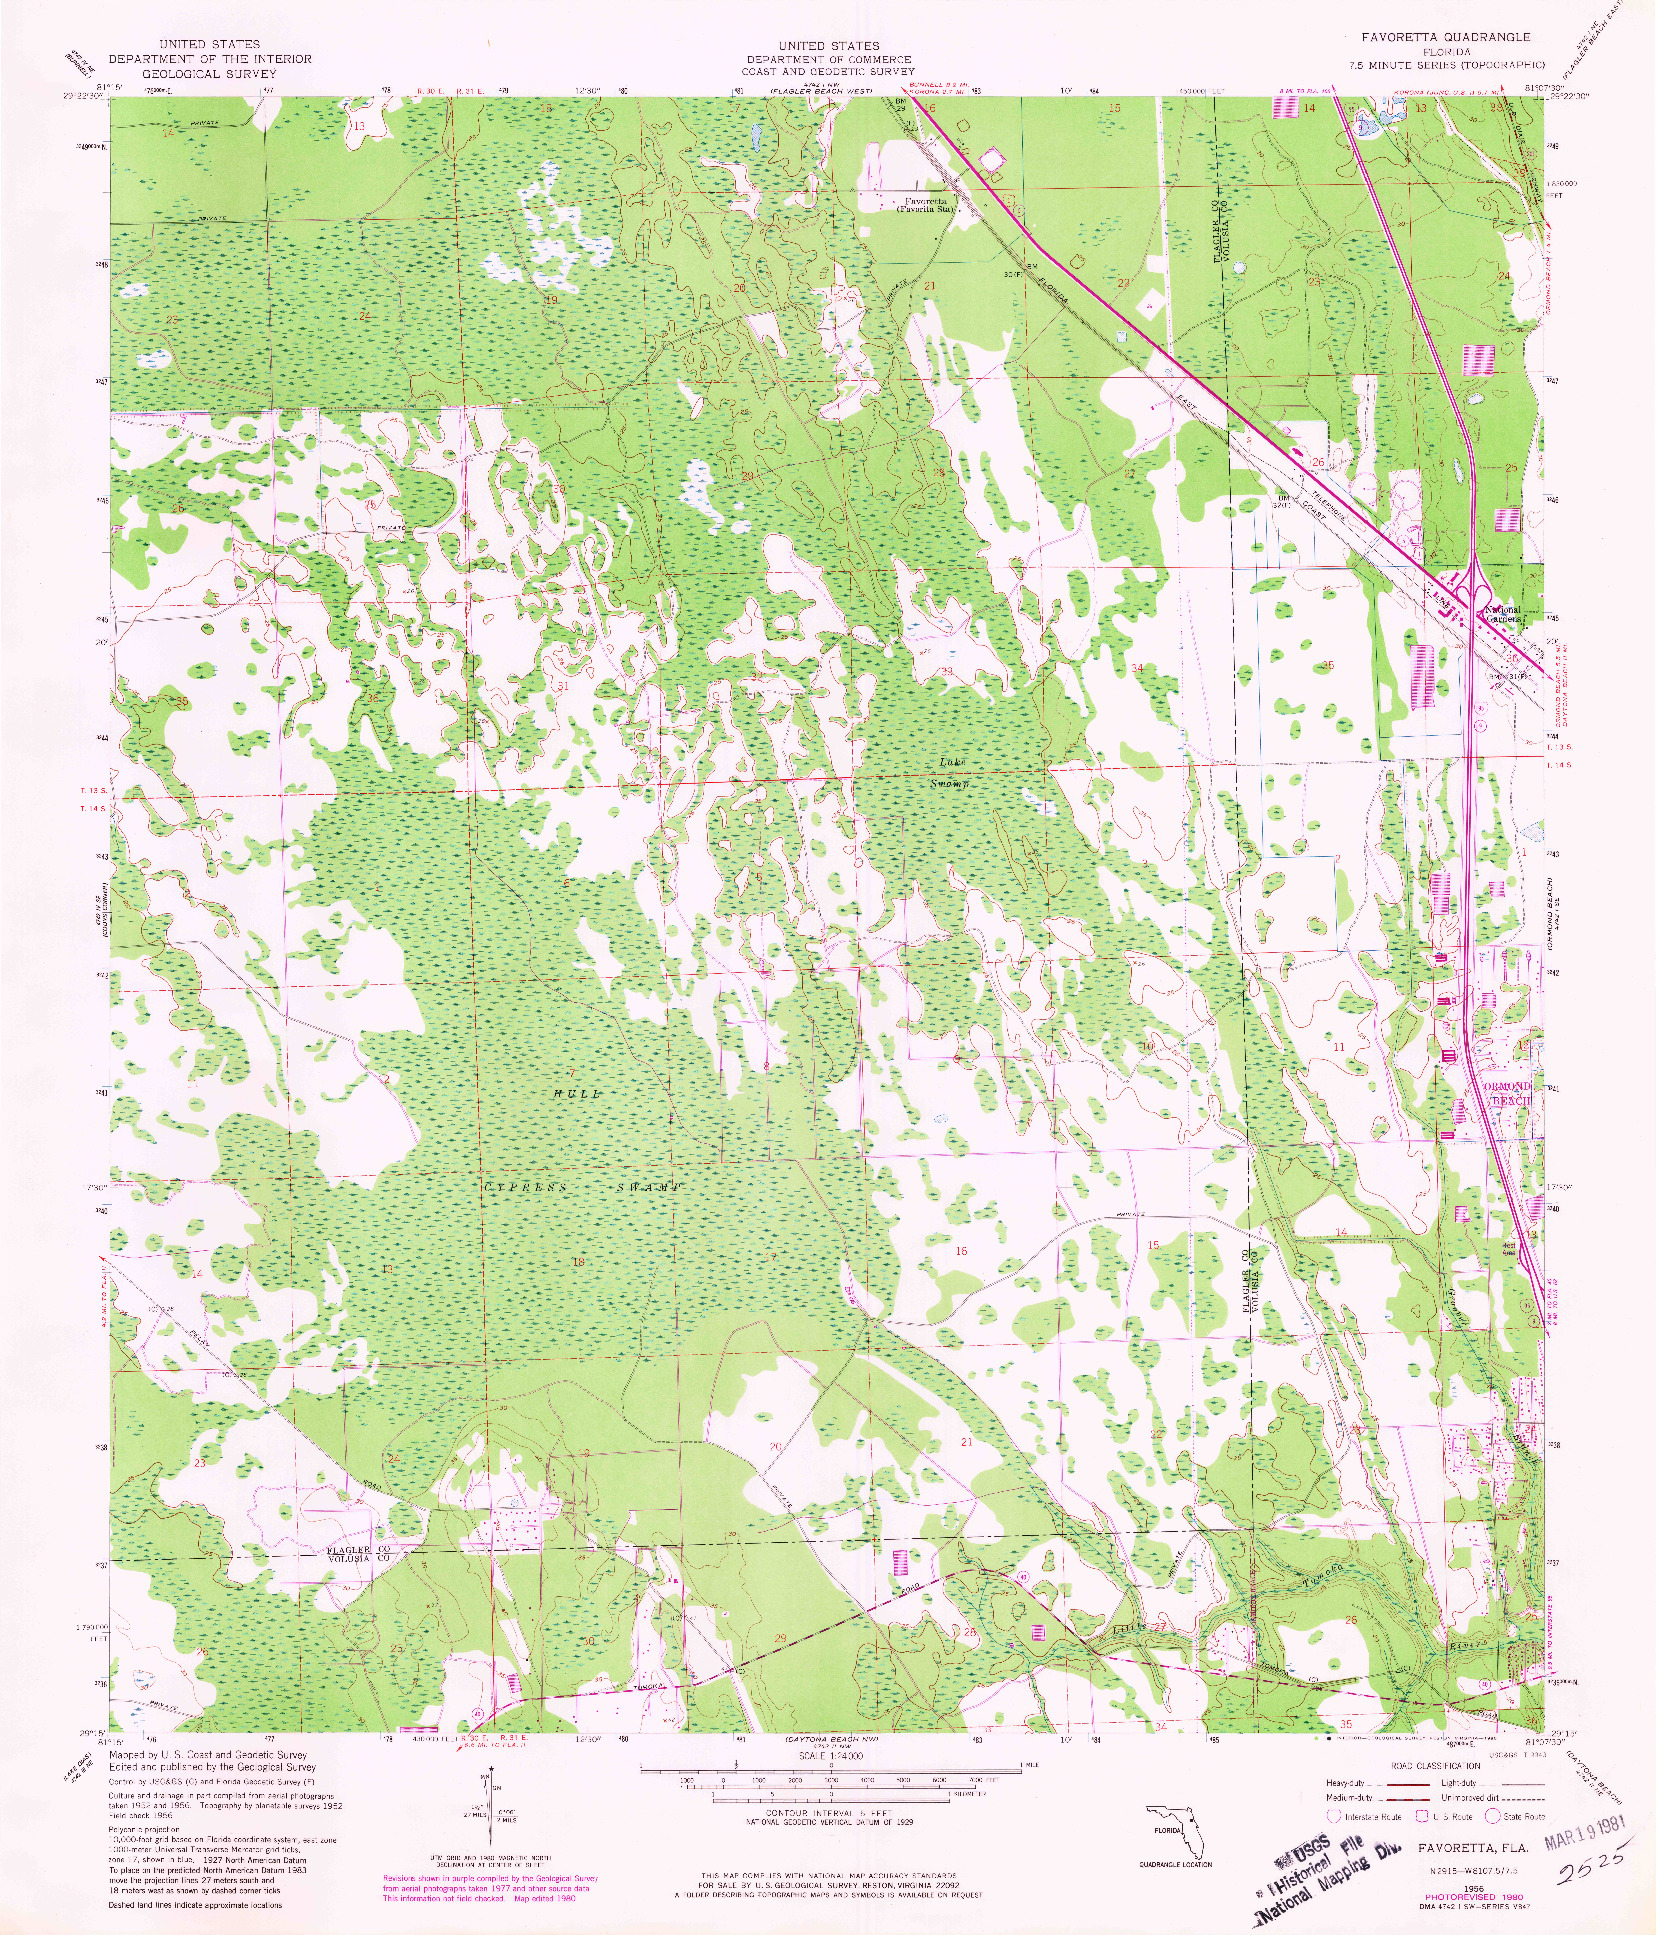 USGS 1:24000-SCALE QUADRANGLE FOR FAVORETTA, FL 1956